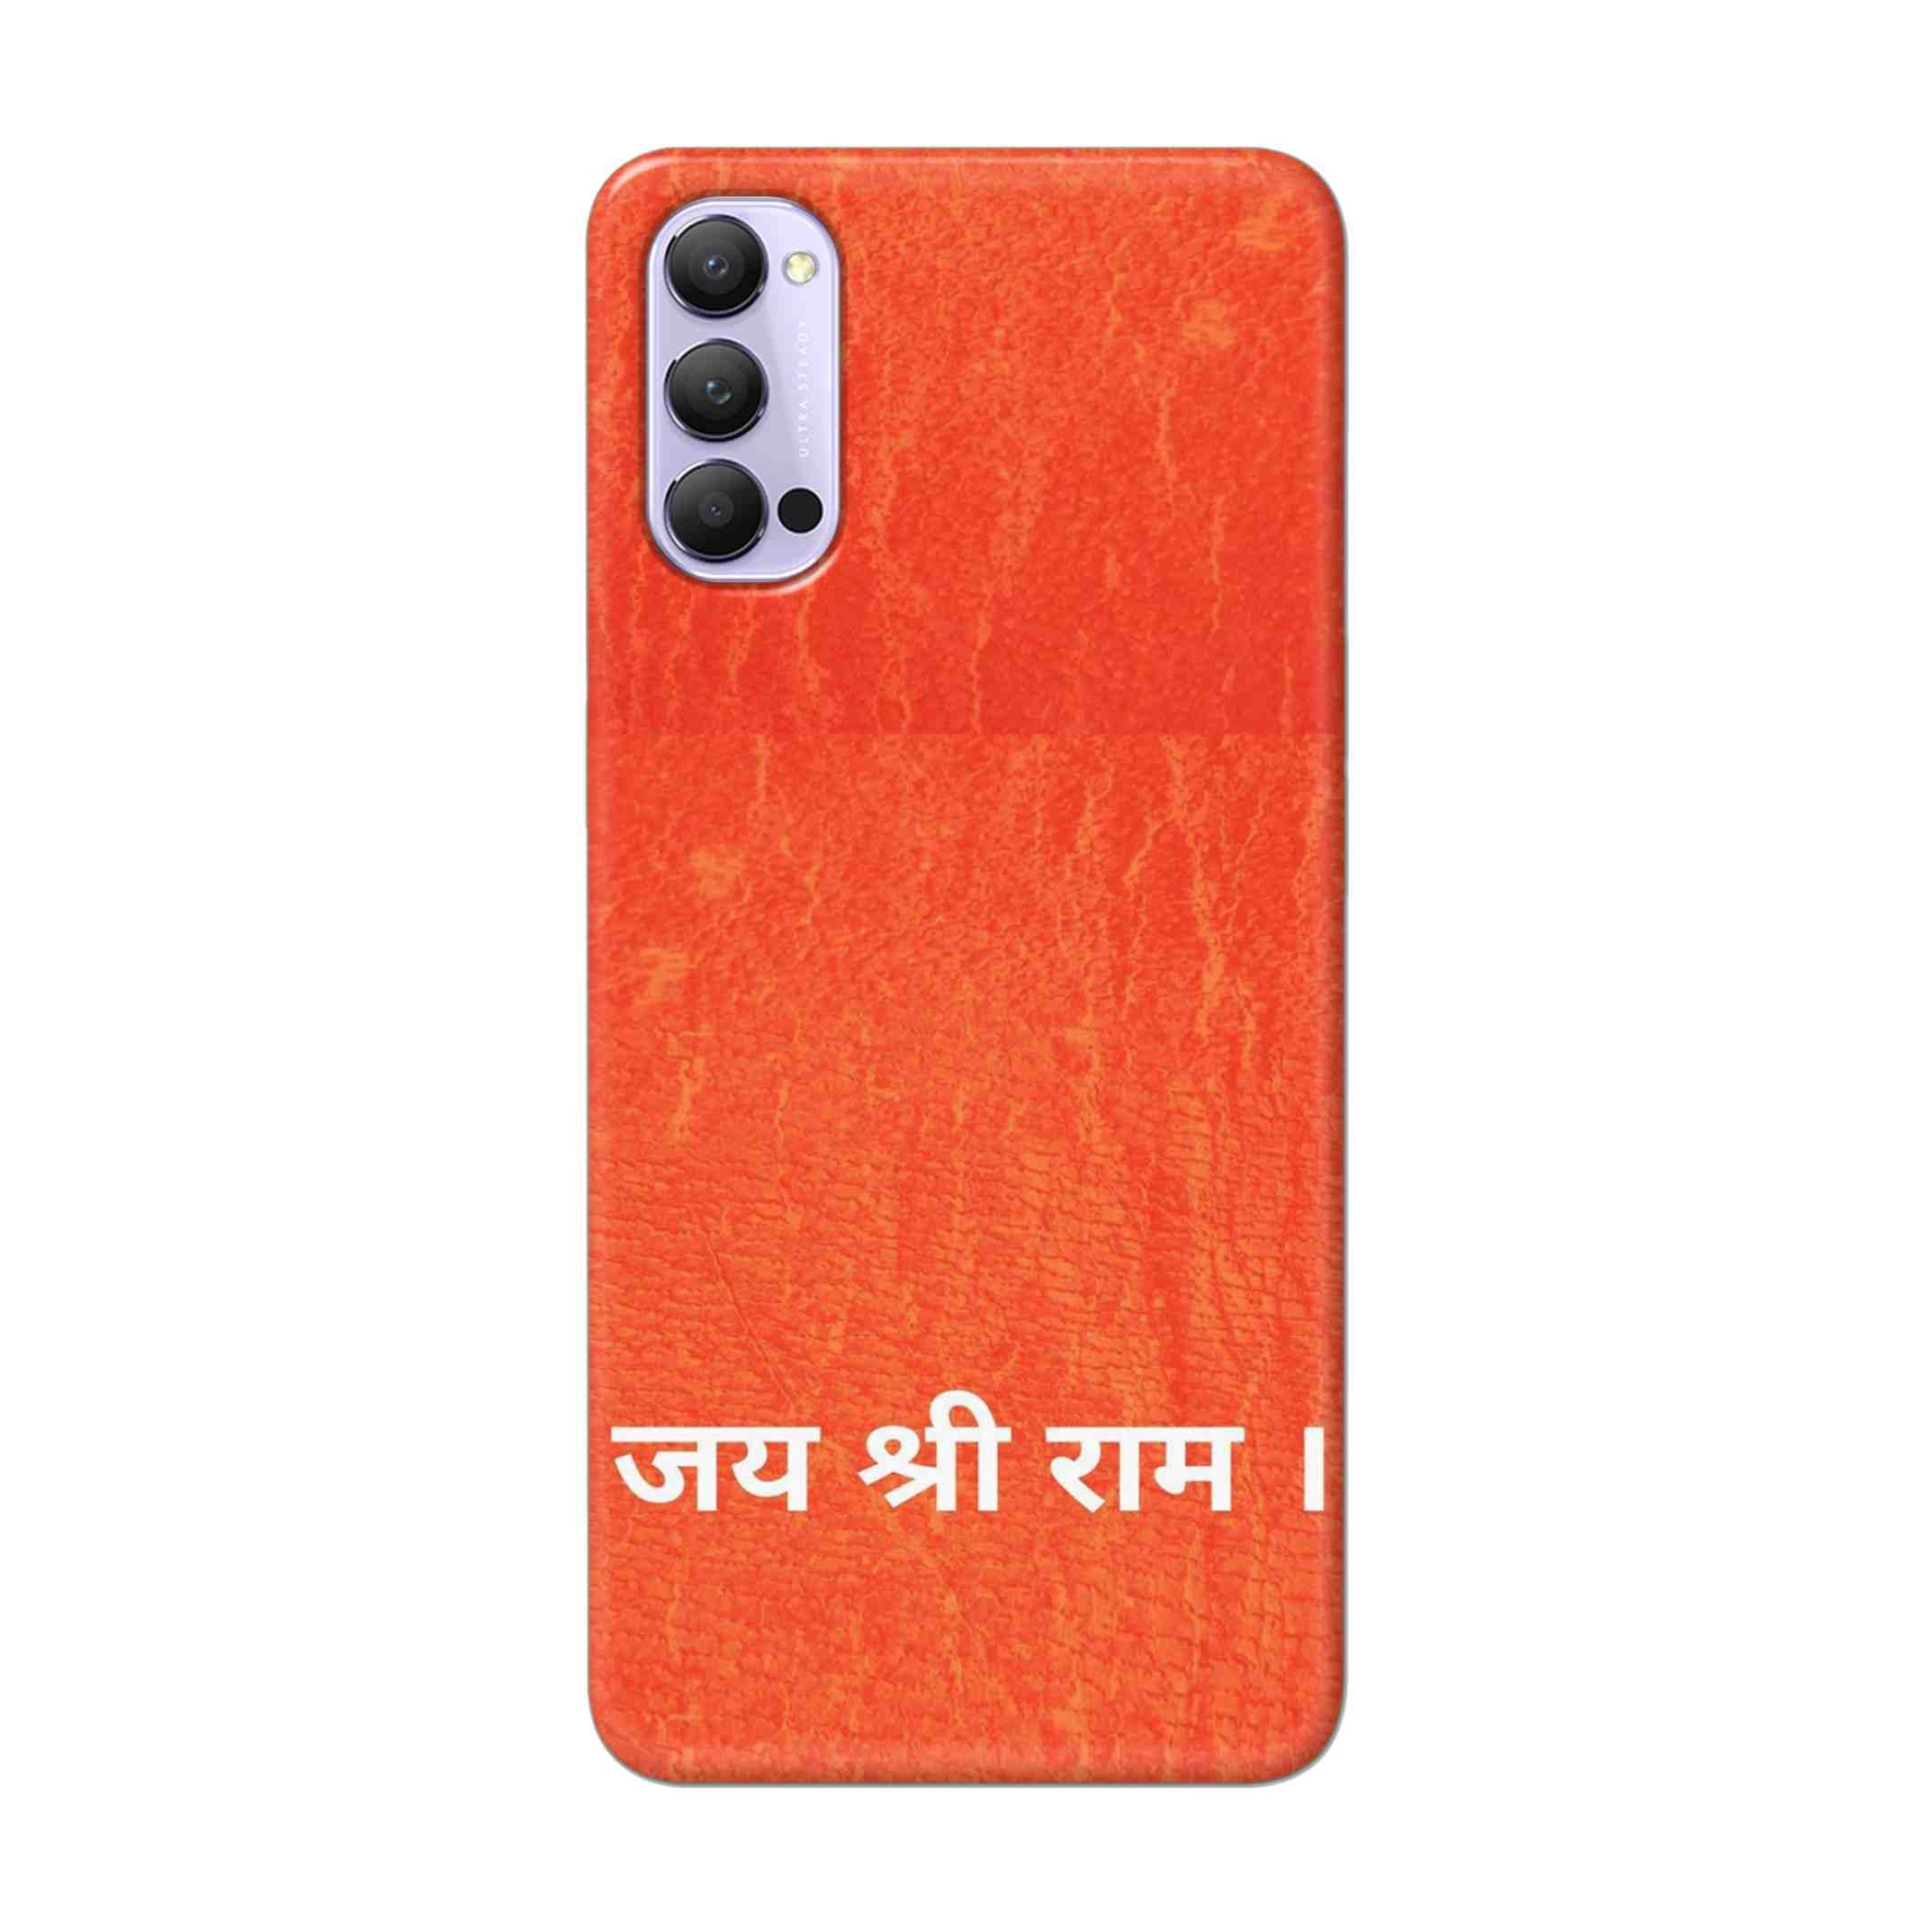 Buy Jai Shree Ram Hard Back Mobile Phone Case Cover For Oppo Reno 4 Pro Online